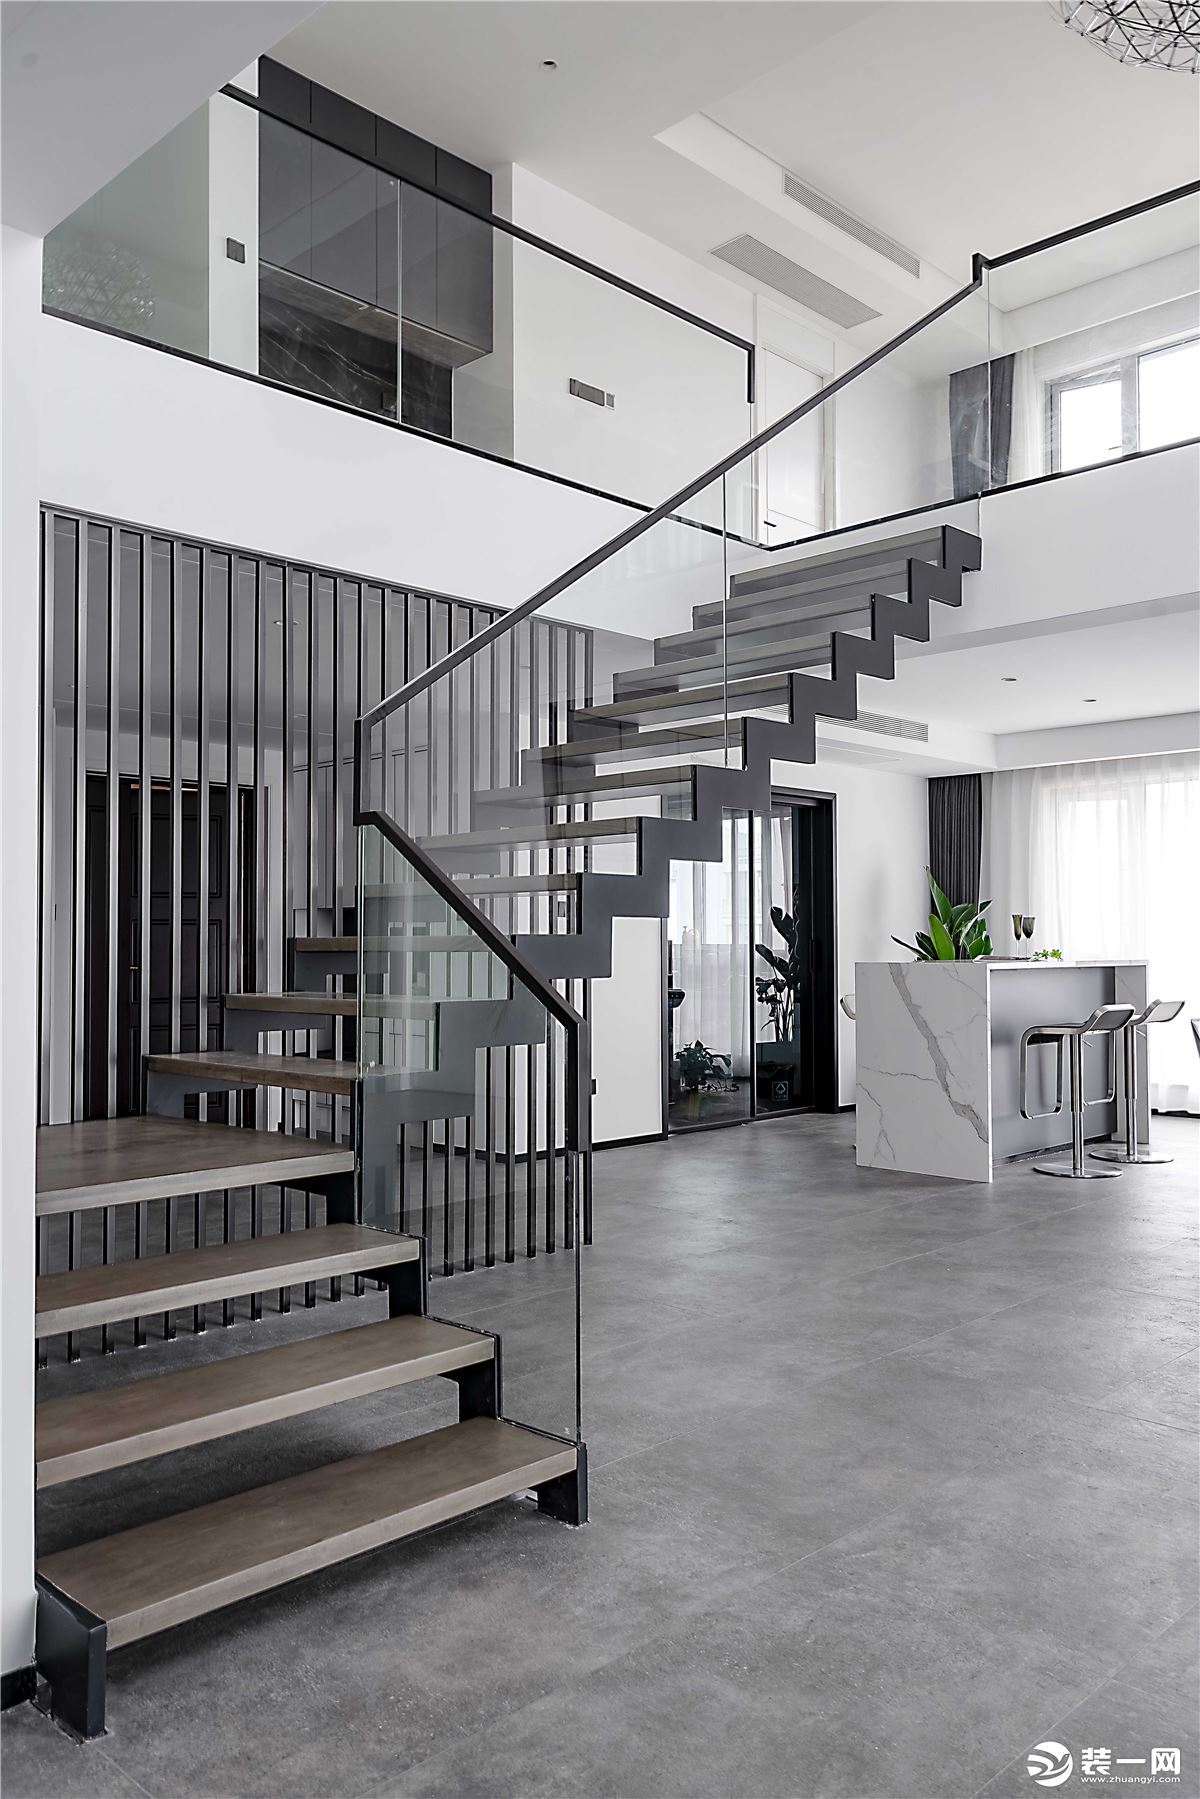 黑色的楼梯线条也让现代极简在此得到了很好的诠释。